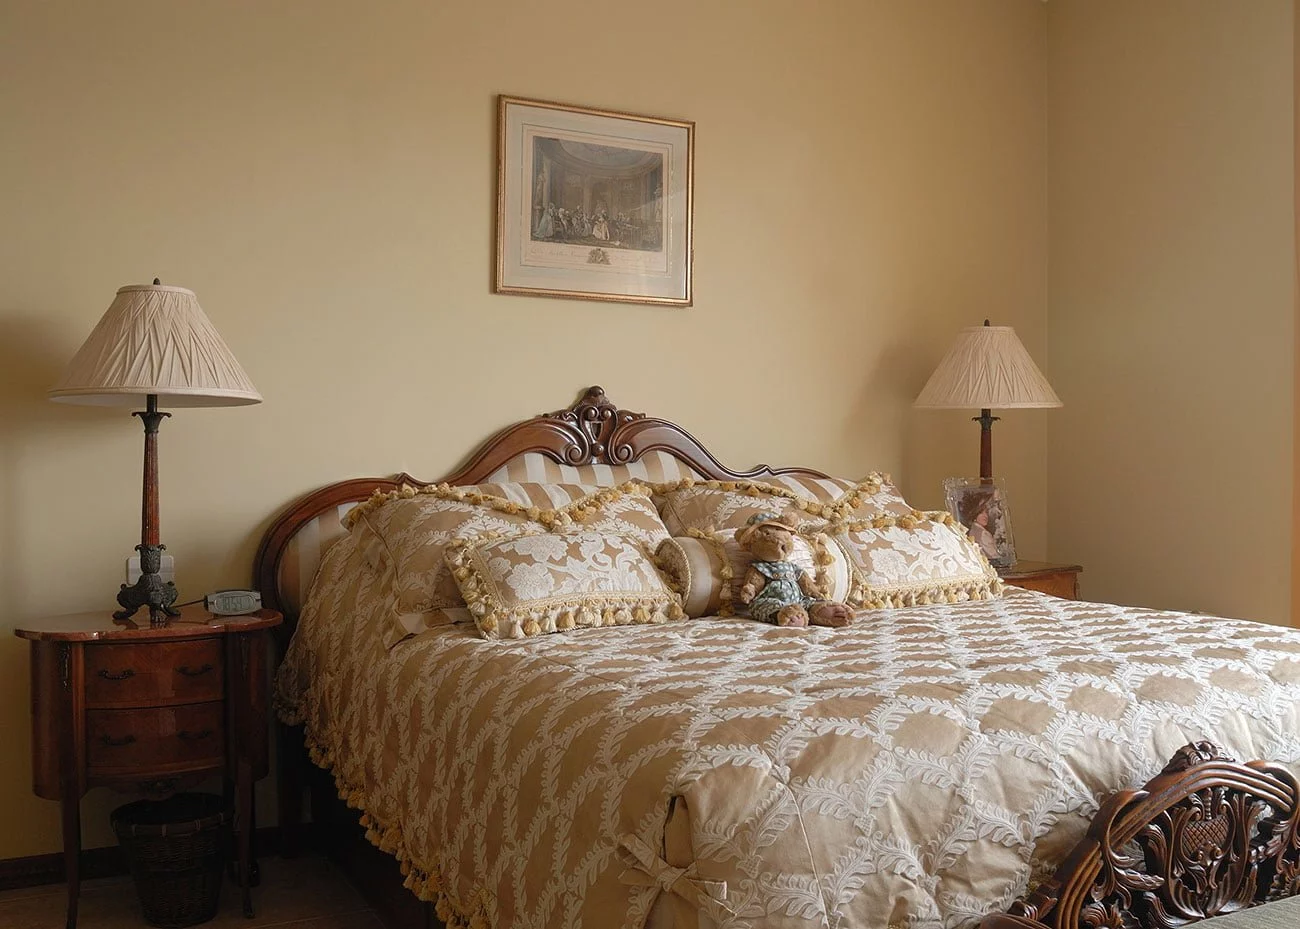 фото кровати с декором резьбы и атласа с антикварными прикроватными тумбочками